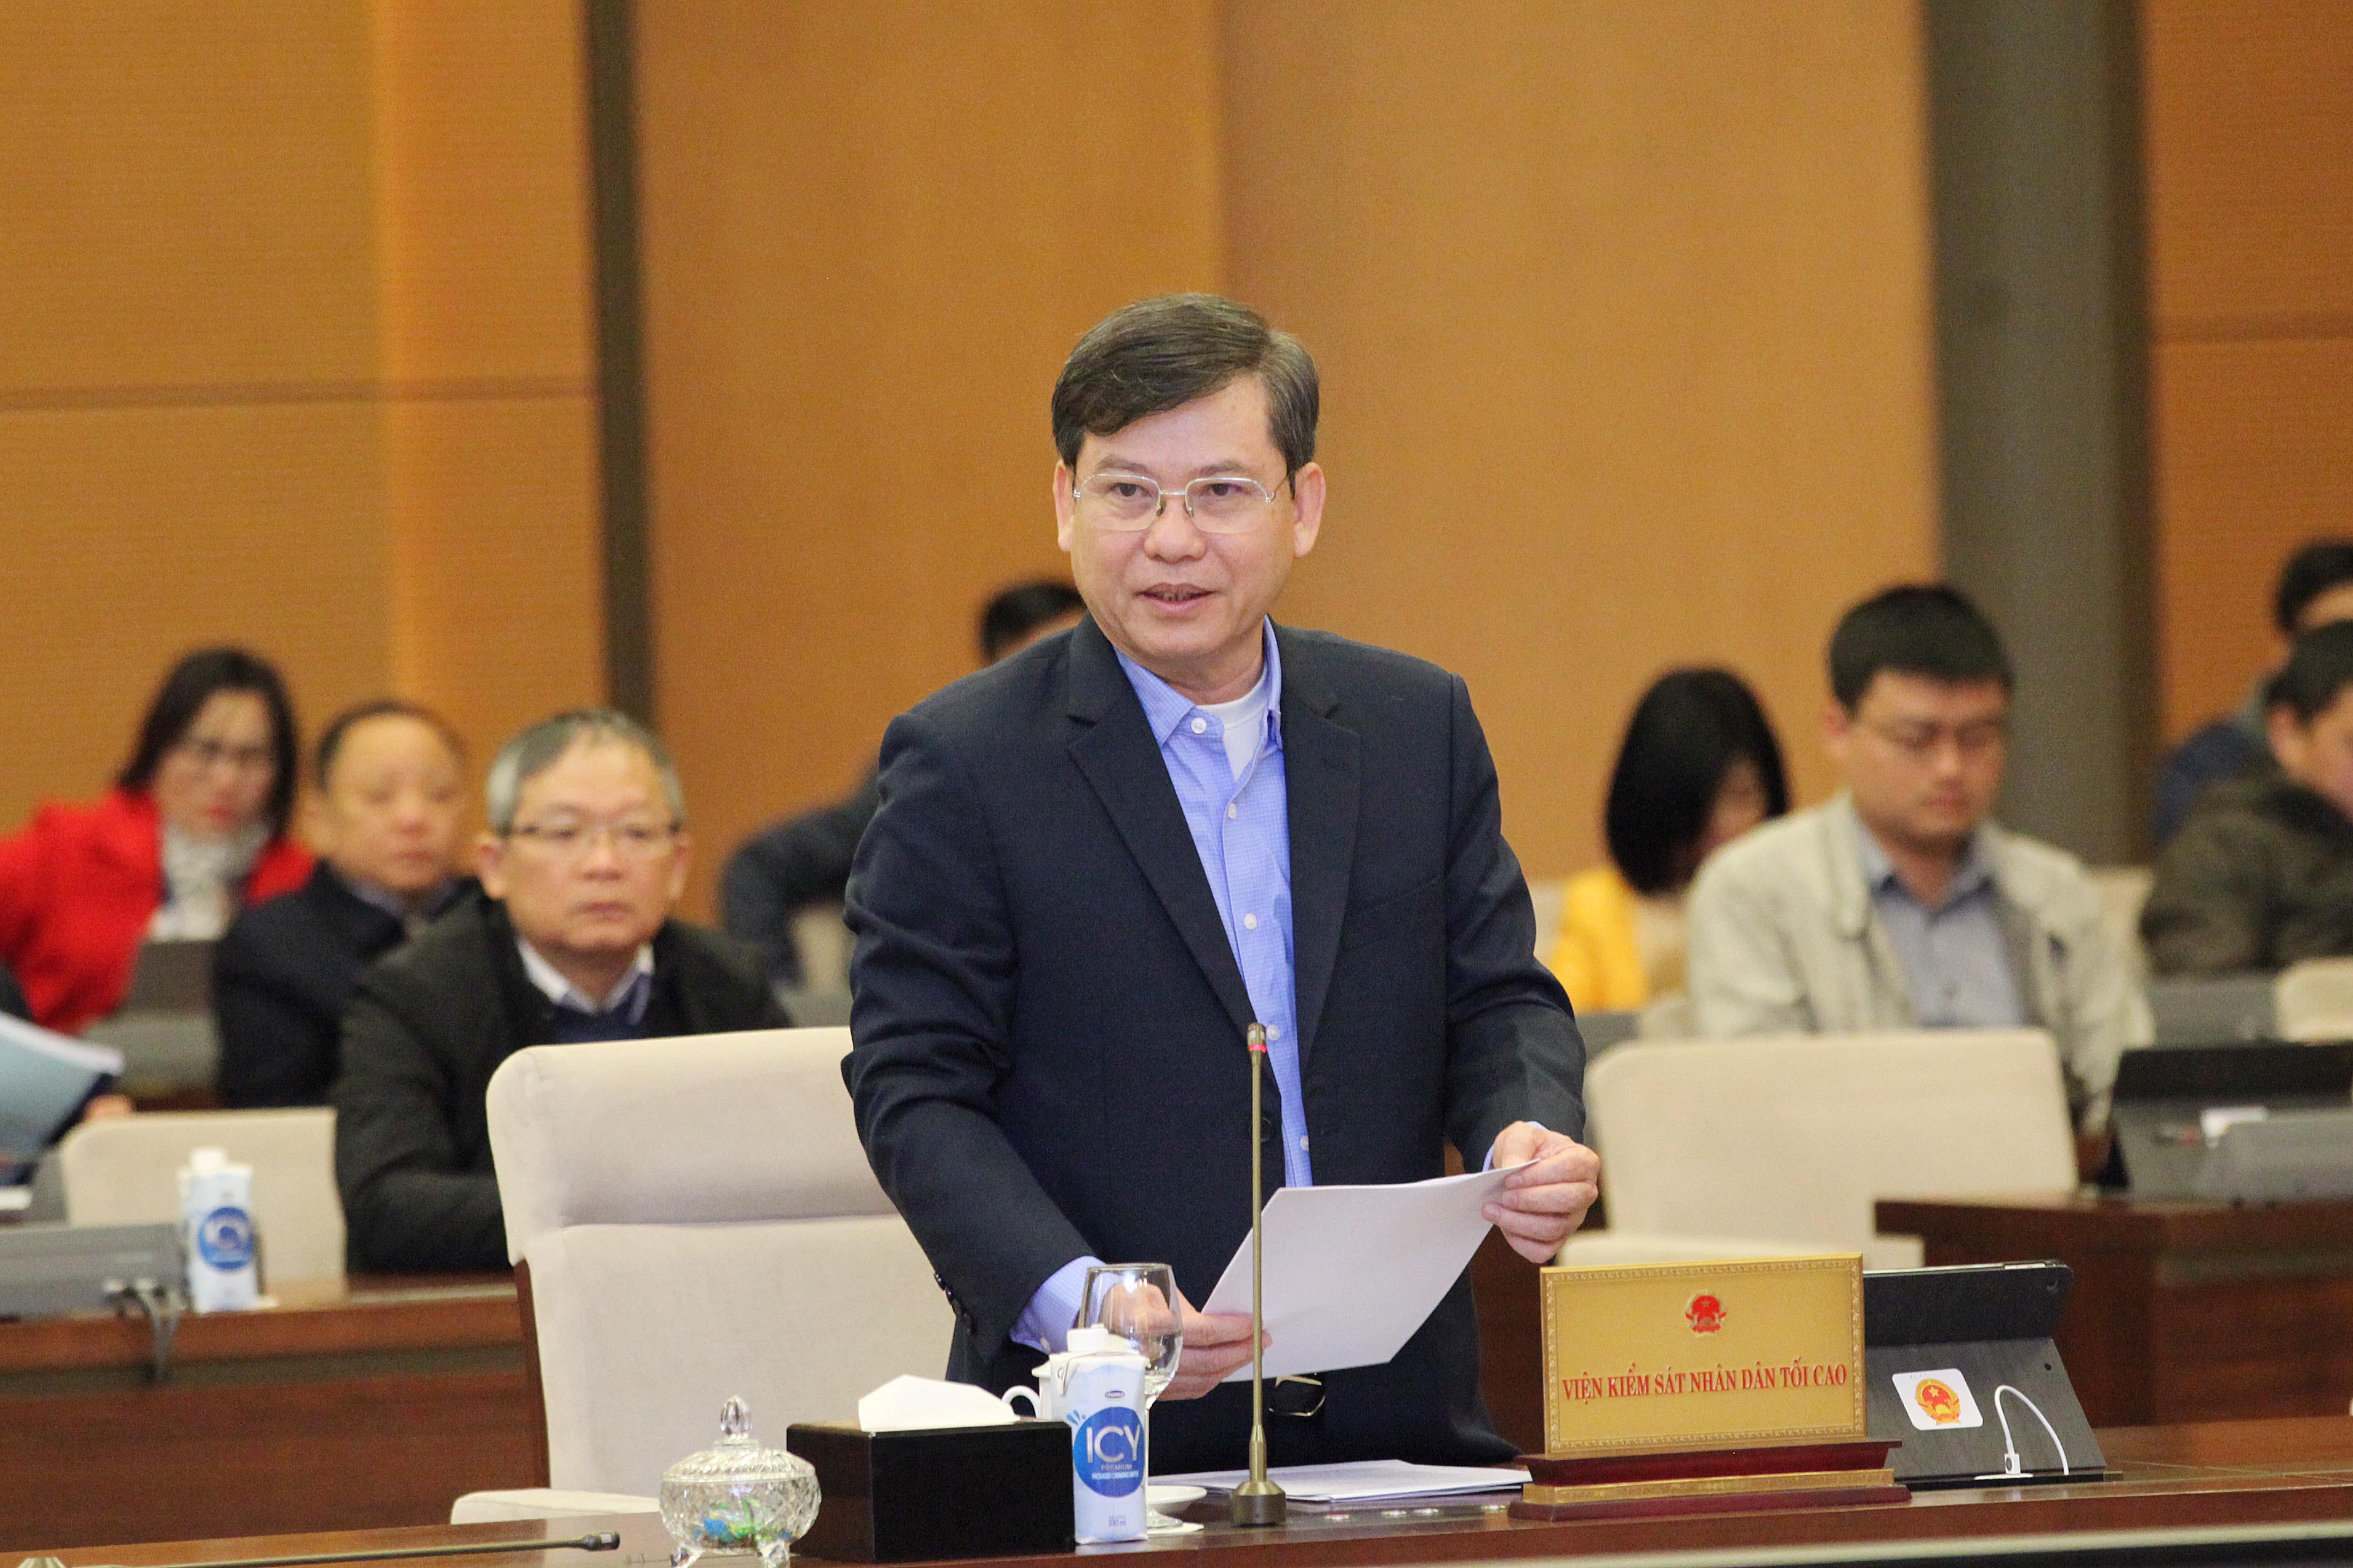 Viện trưởng Viện kiểm sát nhân dân tối cao Lê Minh Trí trình bày Báo cáo công tác nhiệm kỳ 2016-2021